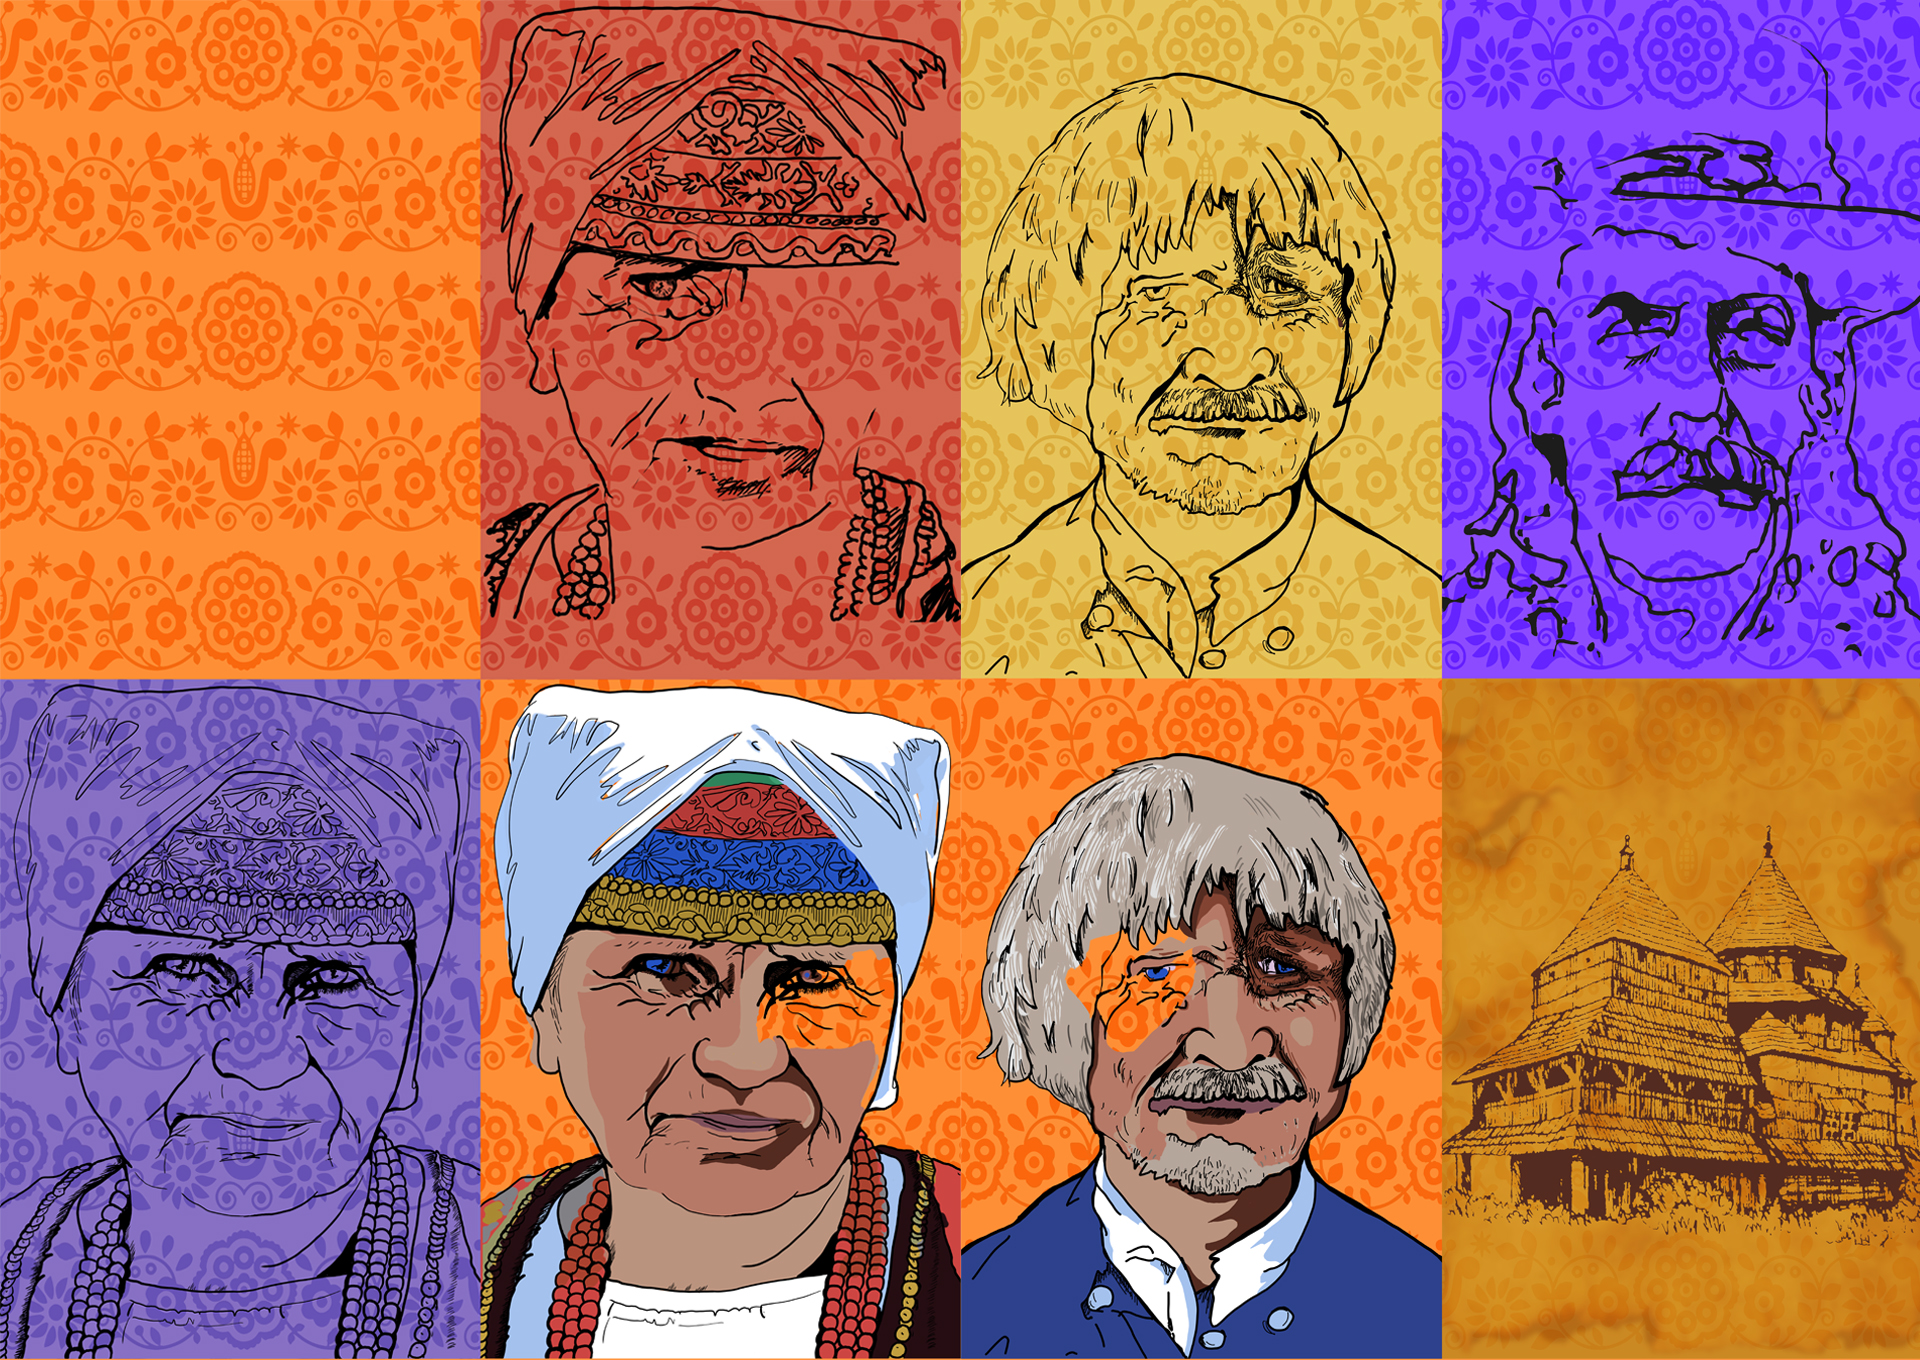 Grafika podzielona na 8 części. Każda z części ma tło w kwiecisty wzór. Sześć przedstawia portret. Portrety są narysowane czarną linią. Dwa portrety są wypełnione kolorem. Na jednej części jest cerkiew. Grafiki są żółte, pomarańczowe i niebieskie. Prace inspirowane są grafikami Andego Warhola, który był Łemkiem.